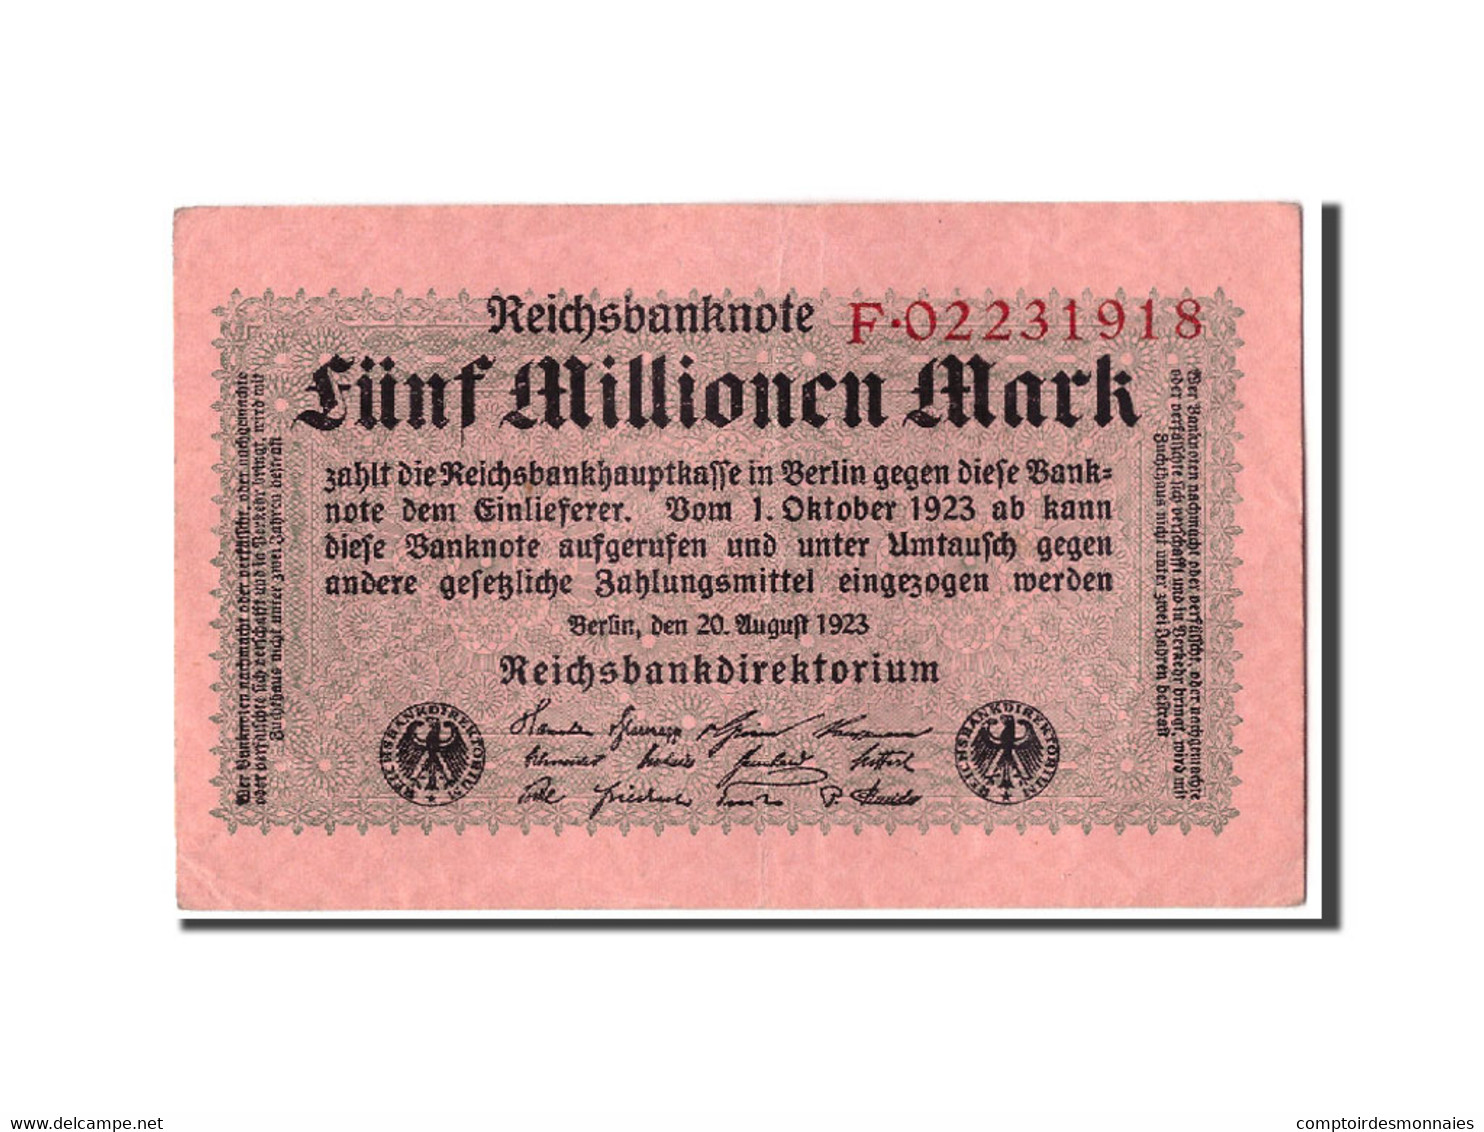 Billet, Allemagne, 5 Millionen Mark, 1923, 1923-08-20, KM:105, SUP - 5 Millionen Mark